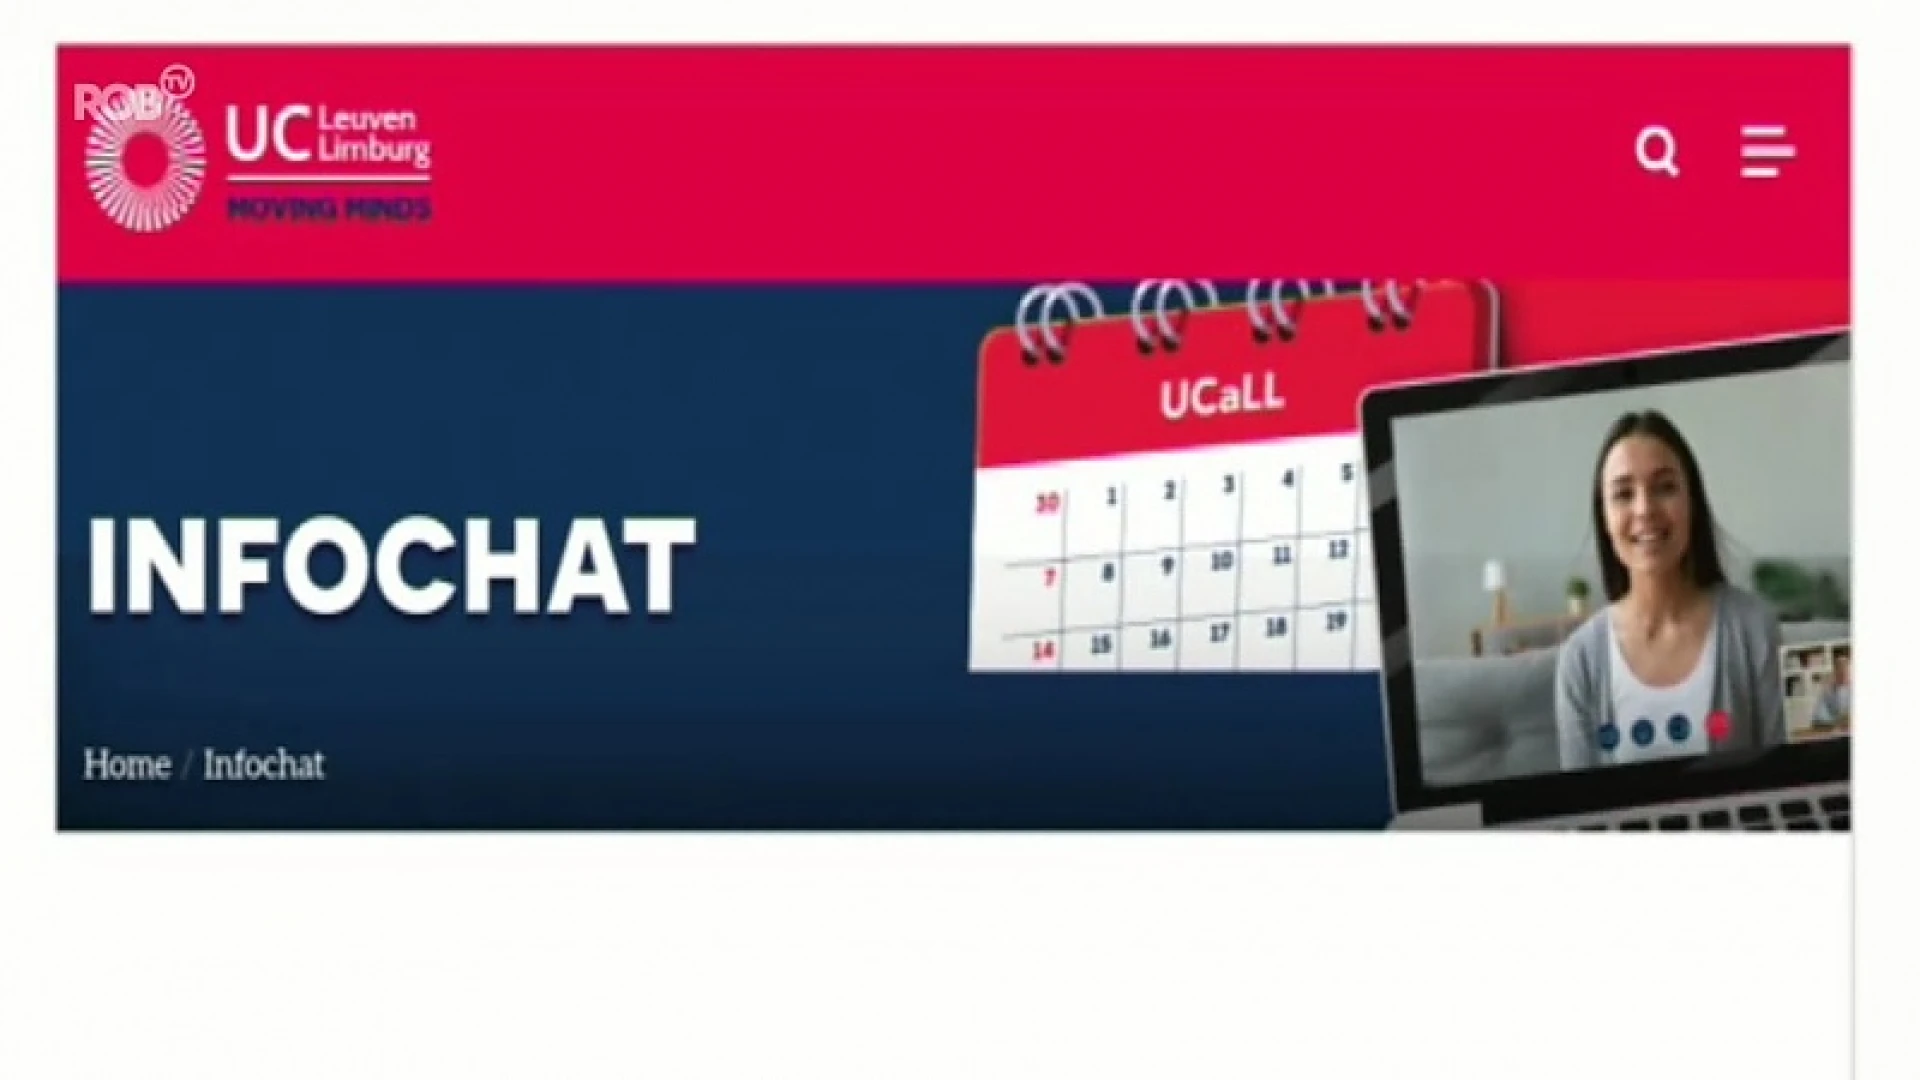 UCLL geeft online studieadvies met videochats